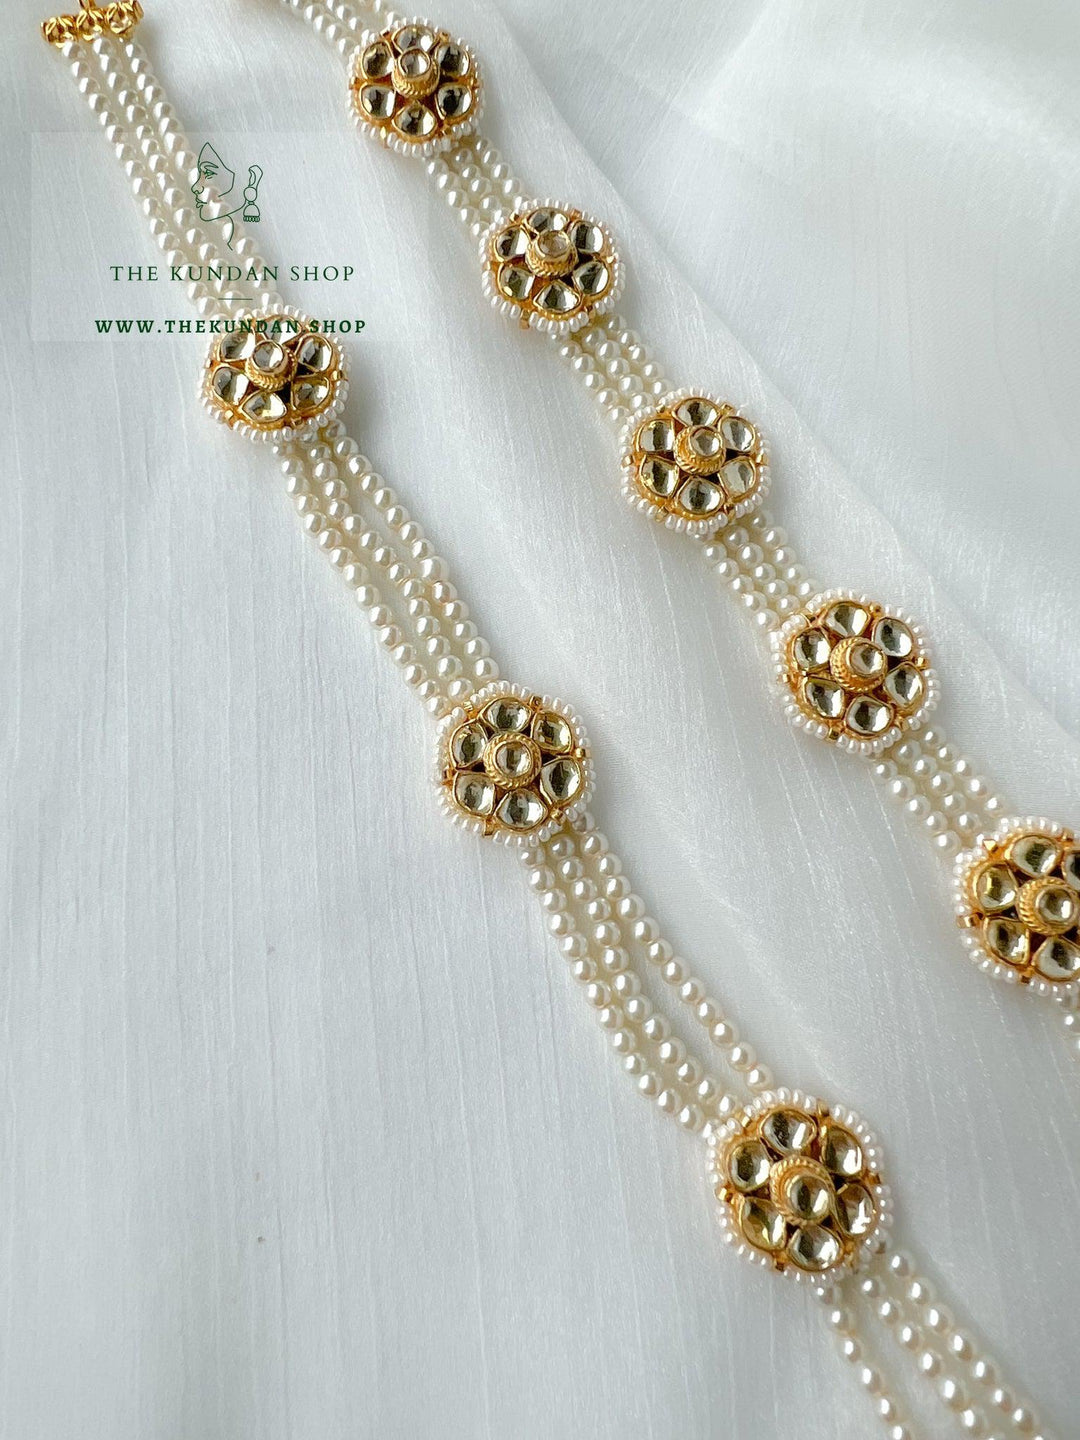 Floral Pearls - Headband Mathapathi THE KUNDAN SHOP 